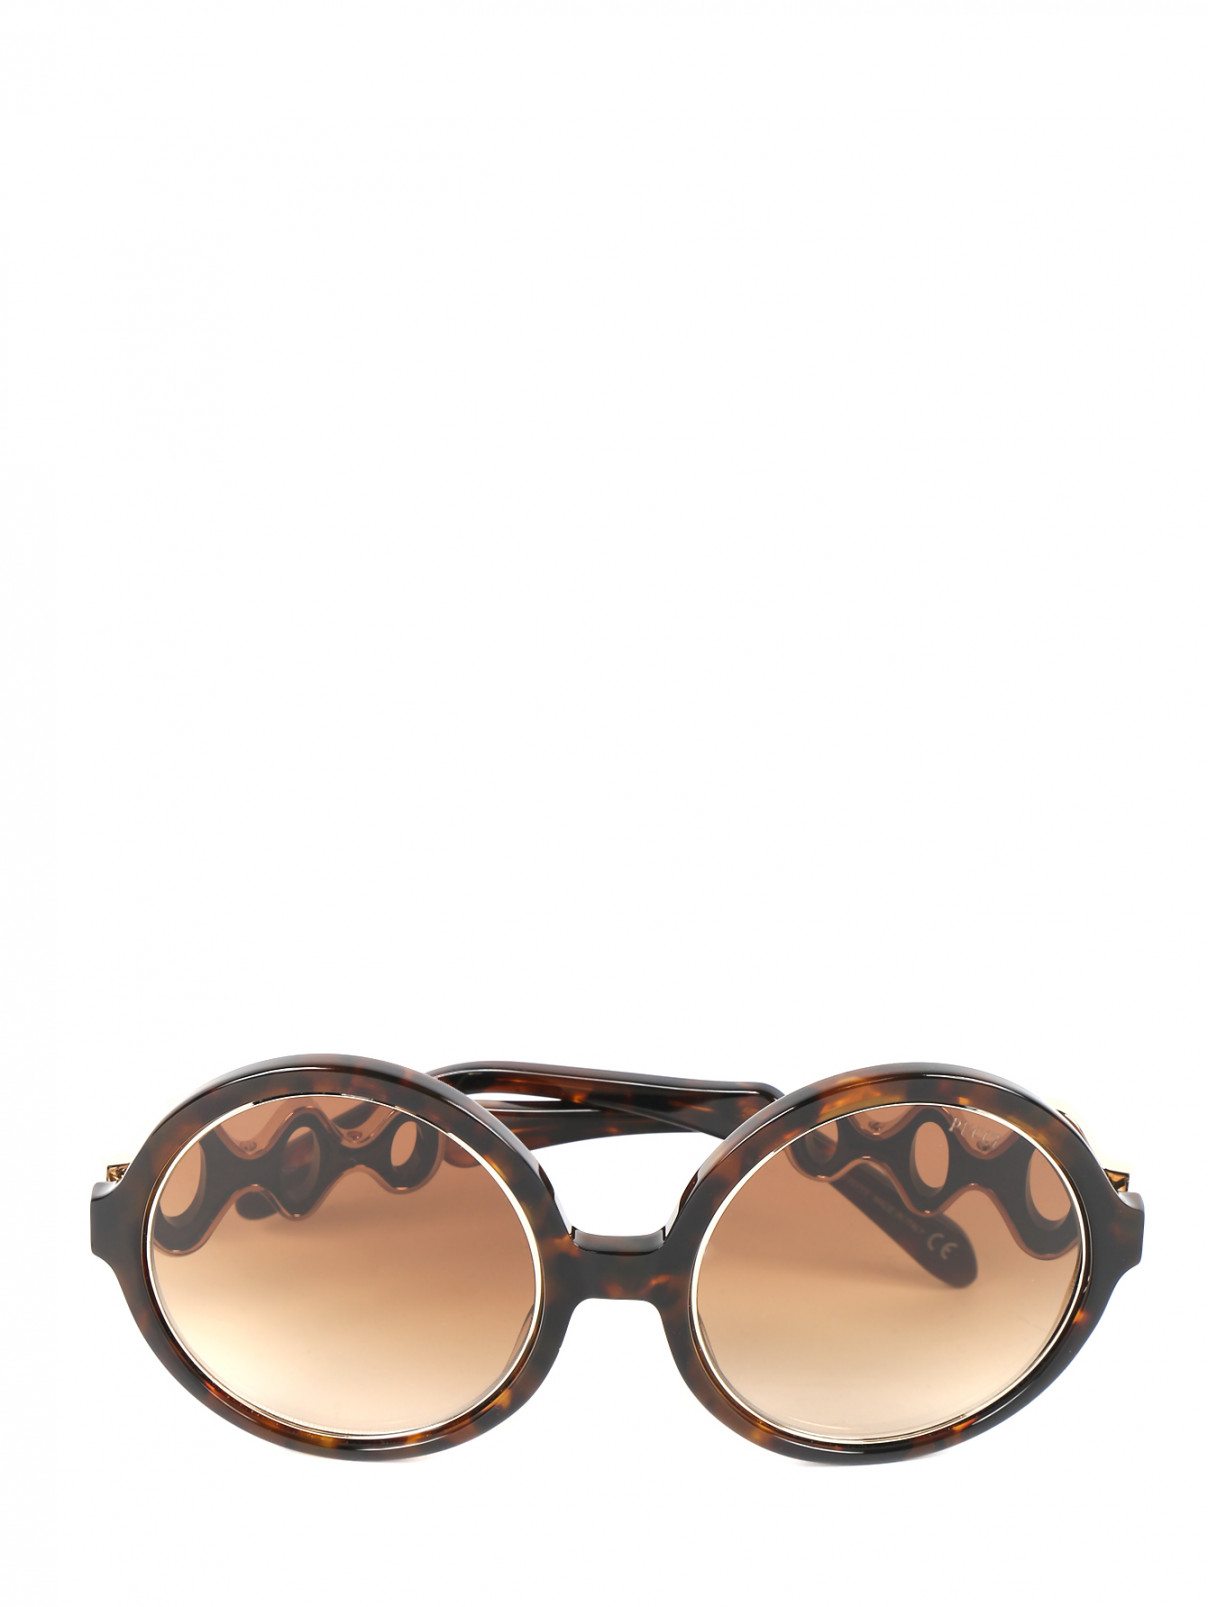 Солнцезащитные очки в пластиковой оправе с декором Emilio Pucci  –  Общий вид  – Цвет:  Коричневый